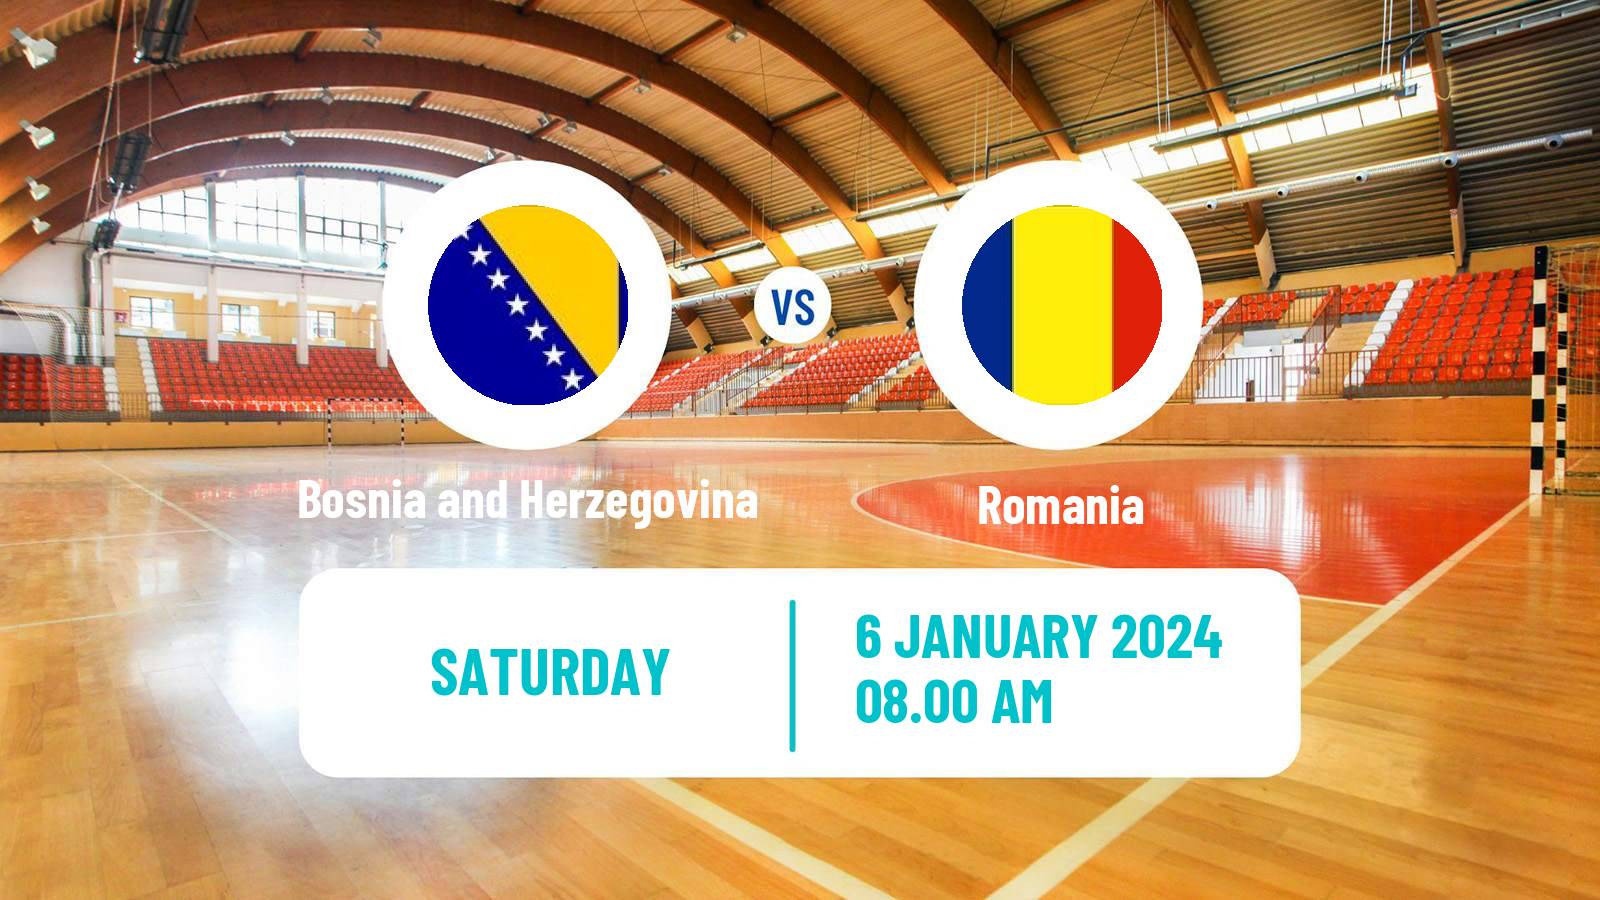 Handball Friendly International Handball Bosnia and Herzegovina - Romania